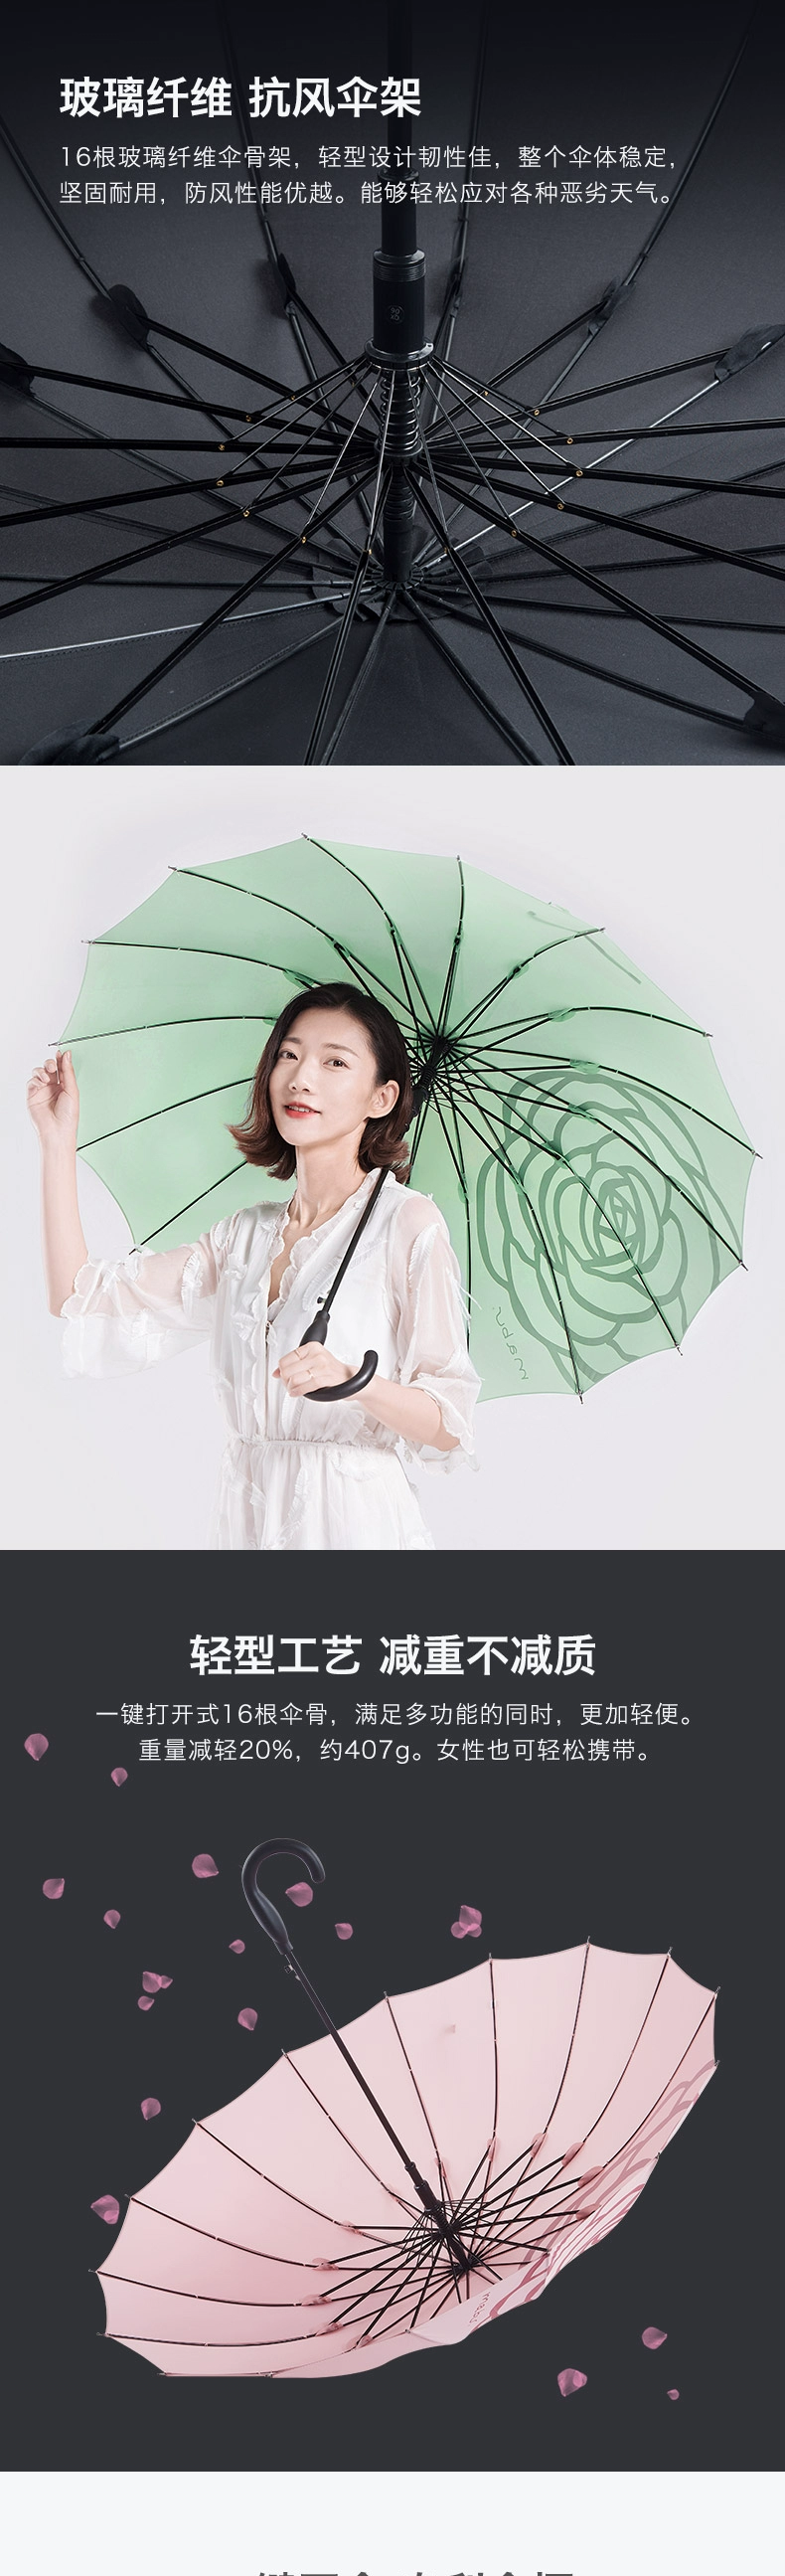 日本人气雨伞品牌，Mabu 16根骨轻便半自动长柄晴雨伞 多色 34元包邮 买手党-买手聚集的地方